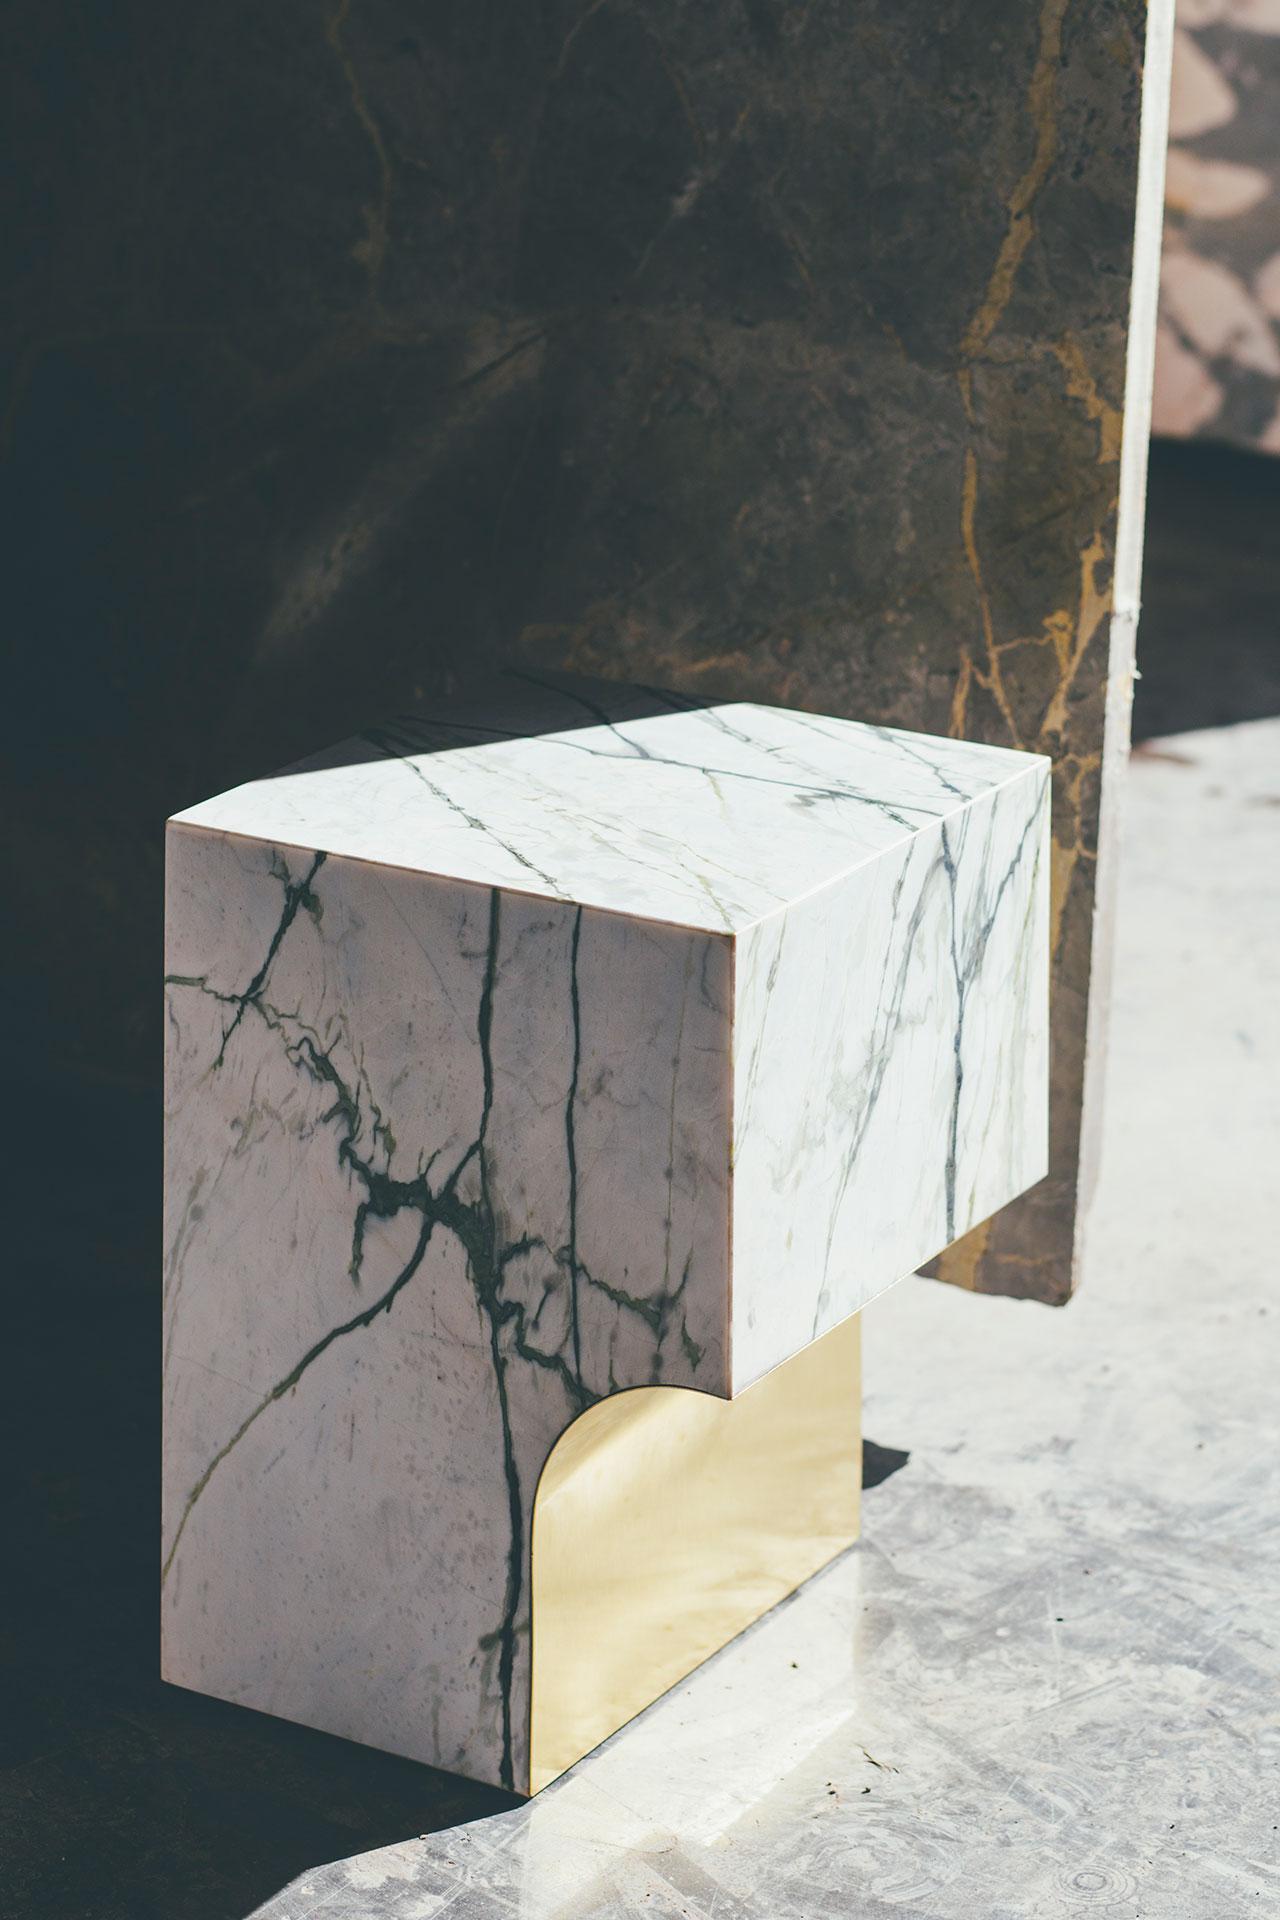 Table d'appoint Arch par Sam Goyvaerts
Dimensions : 45 x 34 x 34 cm : 45 x 34 x 34 cm
Marbre et laiton.

L'arche 01.1 C se distingue par son langage stylistique fort. L'objet en marbre est magnifiquement fini avec une surface en métal. Laiton en